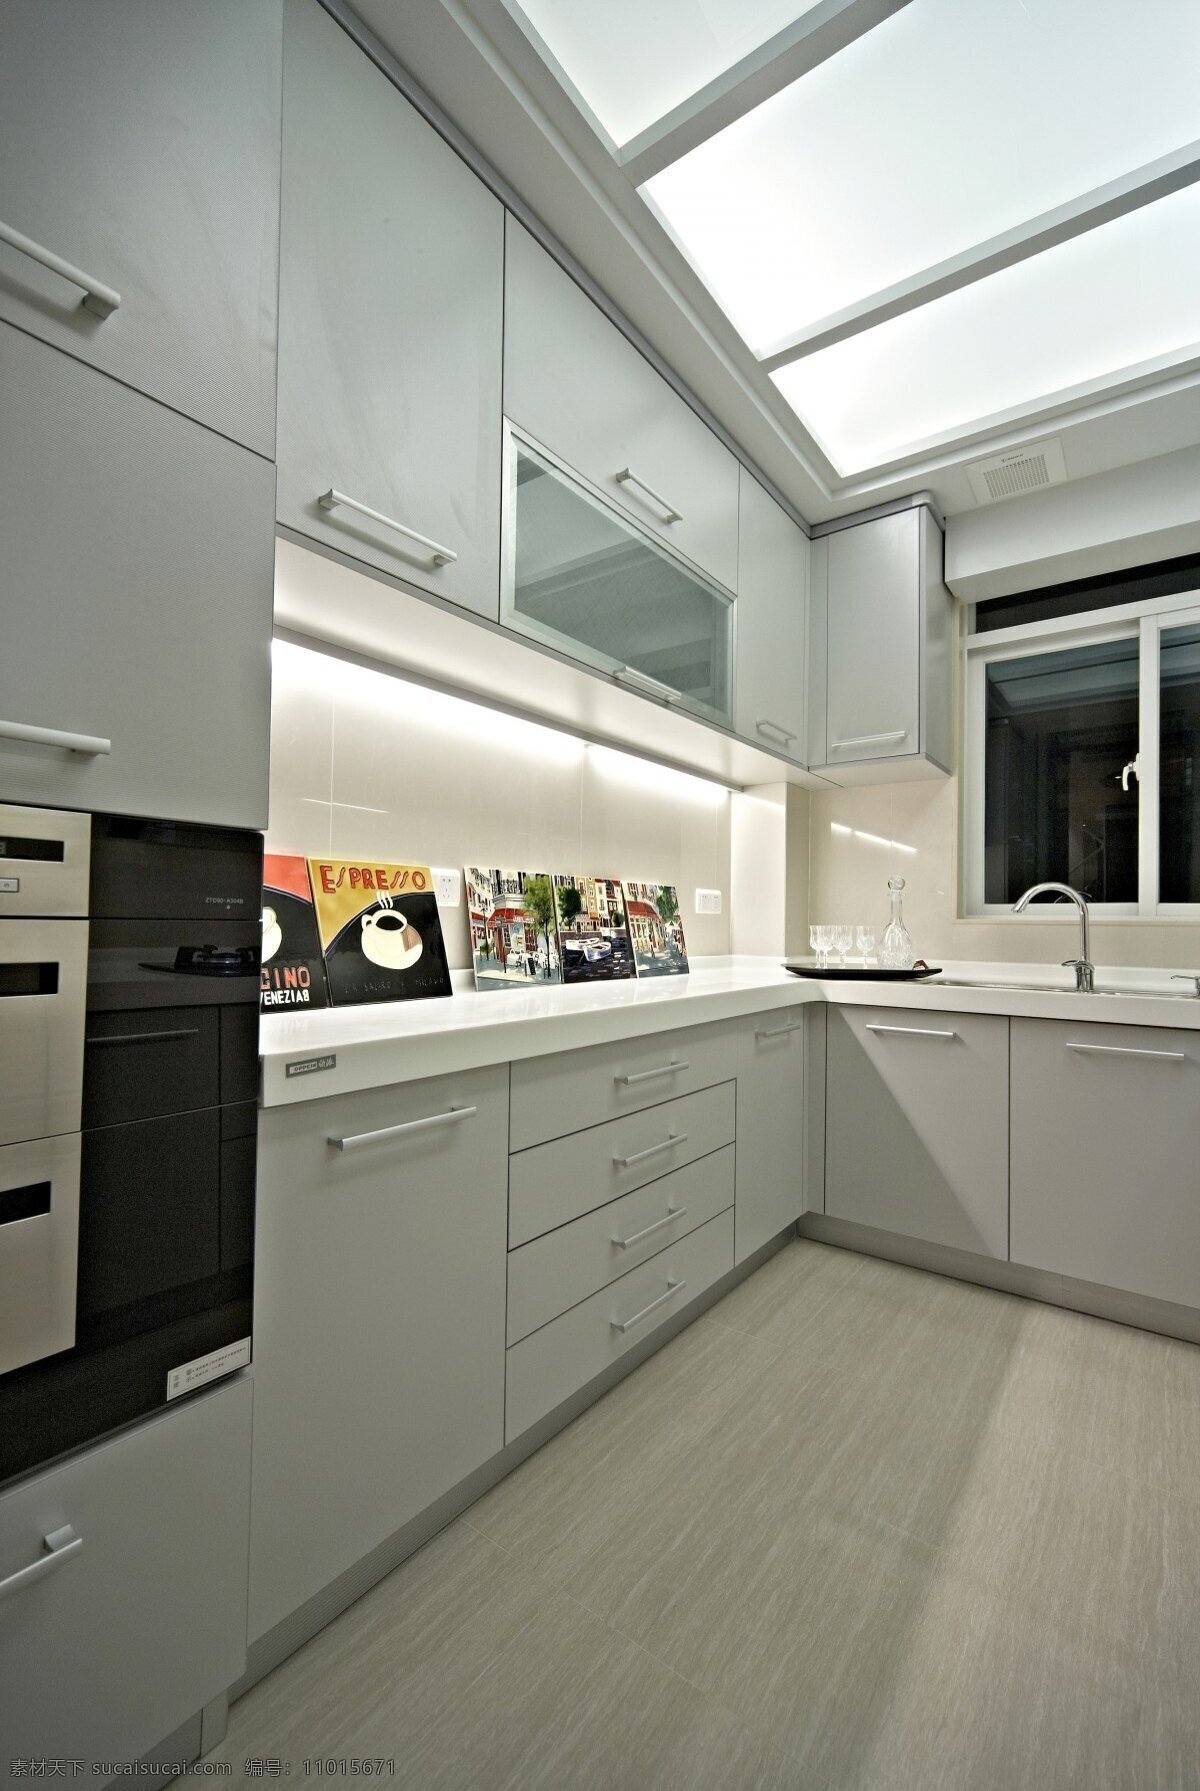 现代 简洁 厨房 纯色 调 室内装修 效果图 厨房装修 白色柜子 纯色地板 黑色柜子